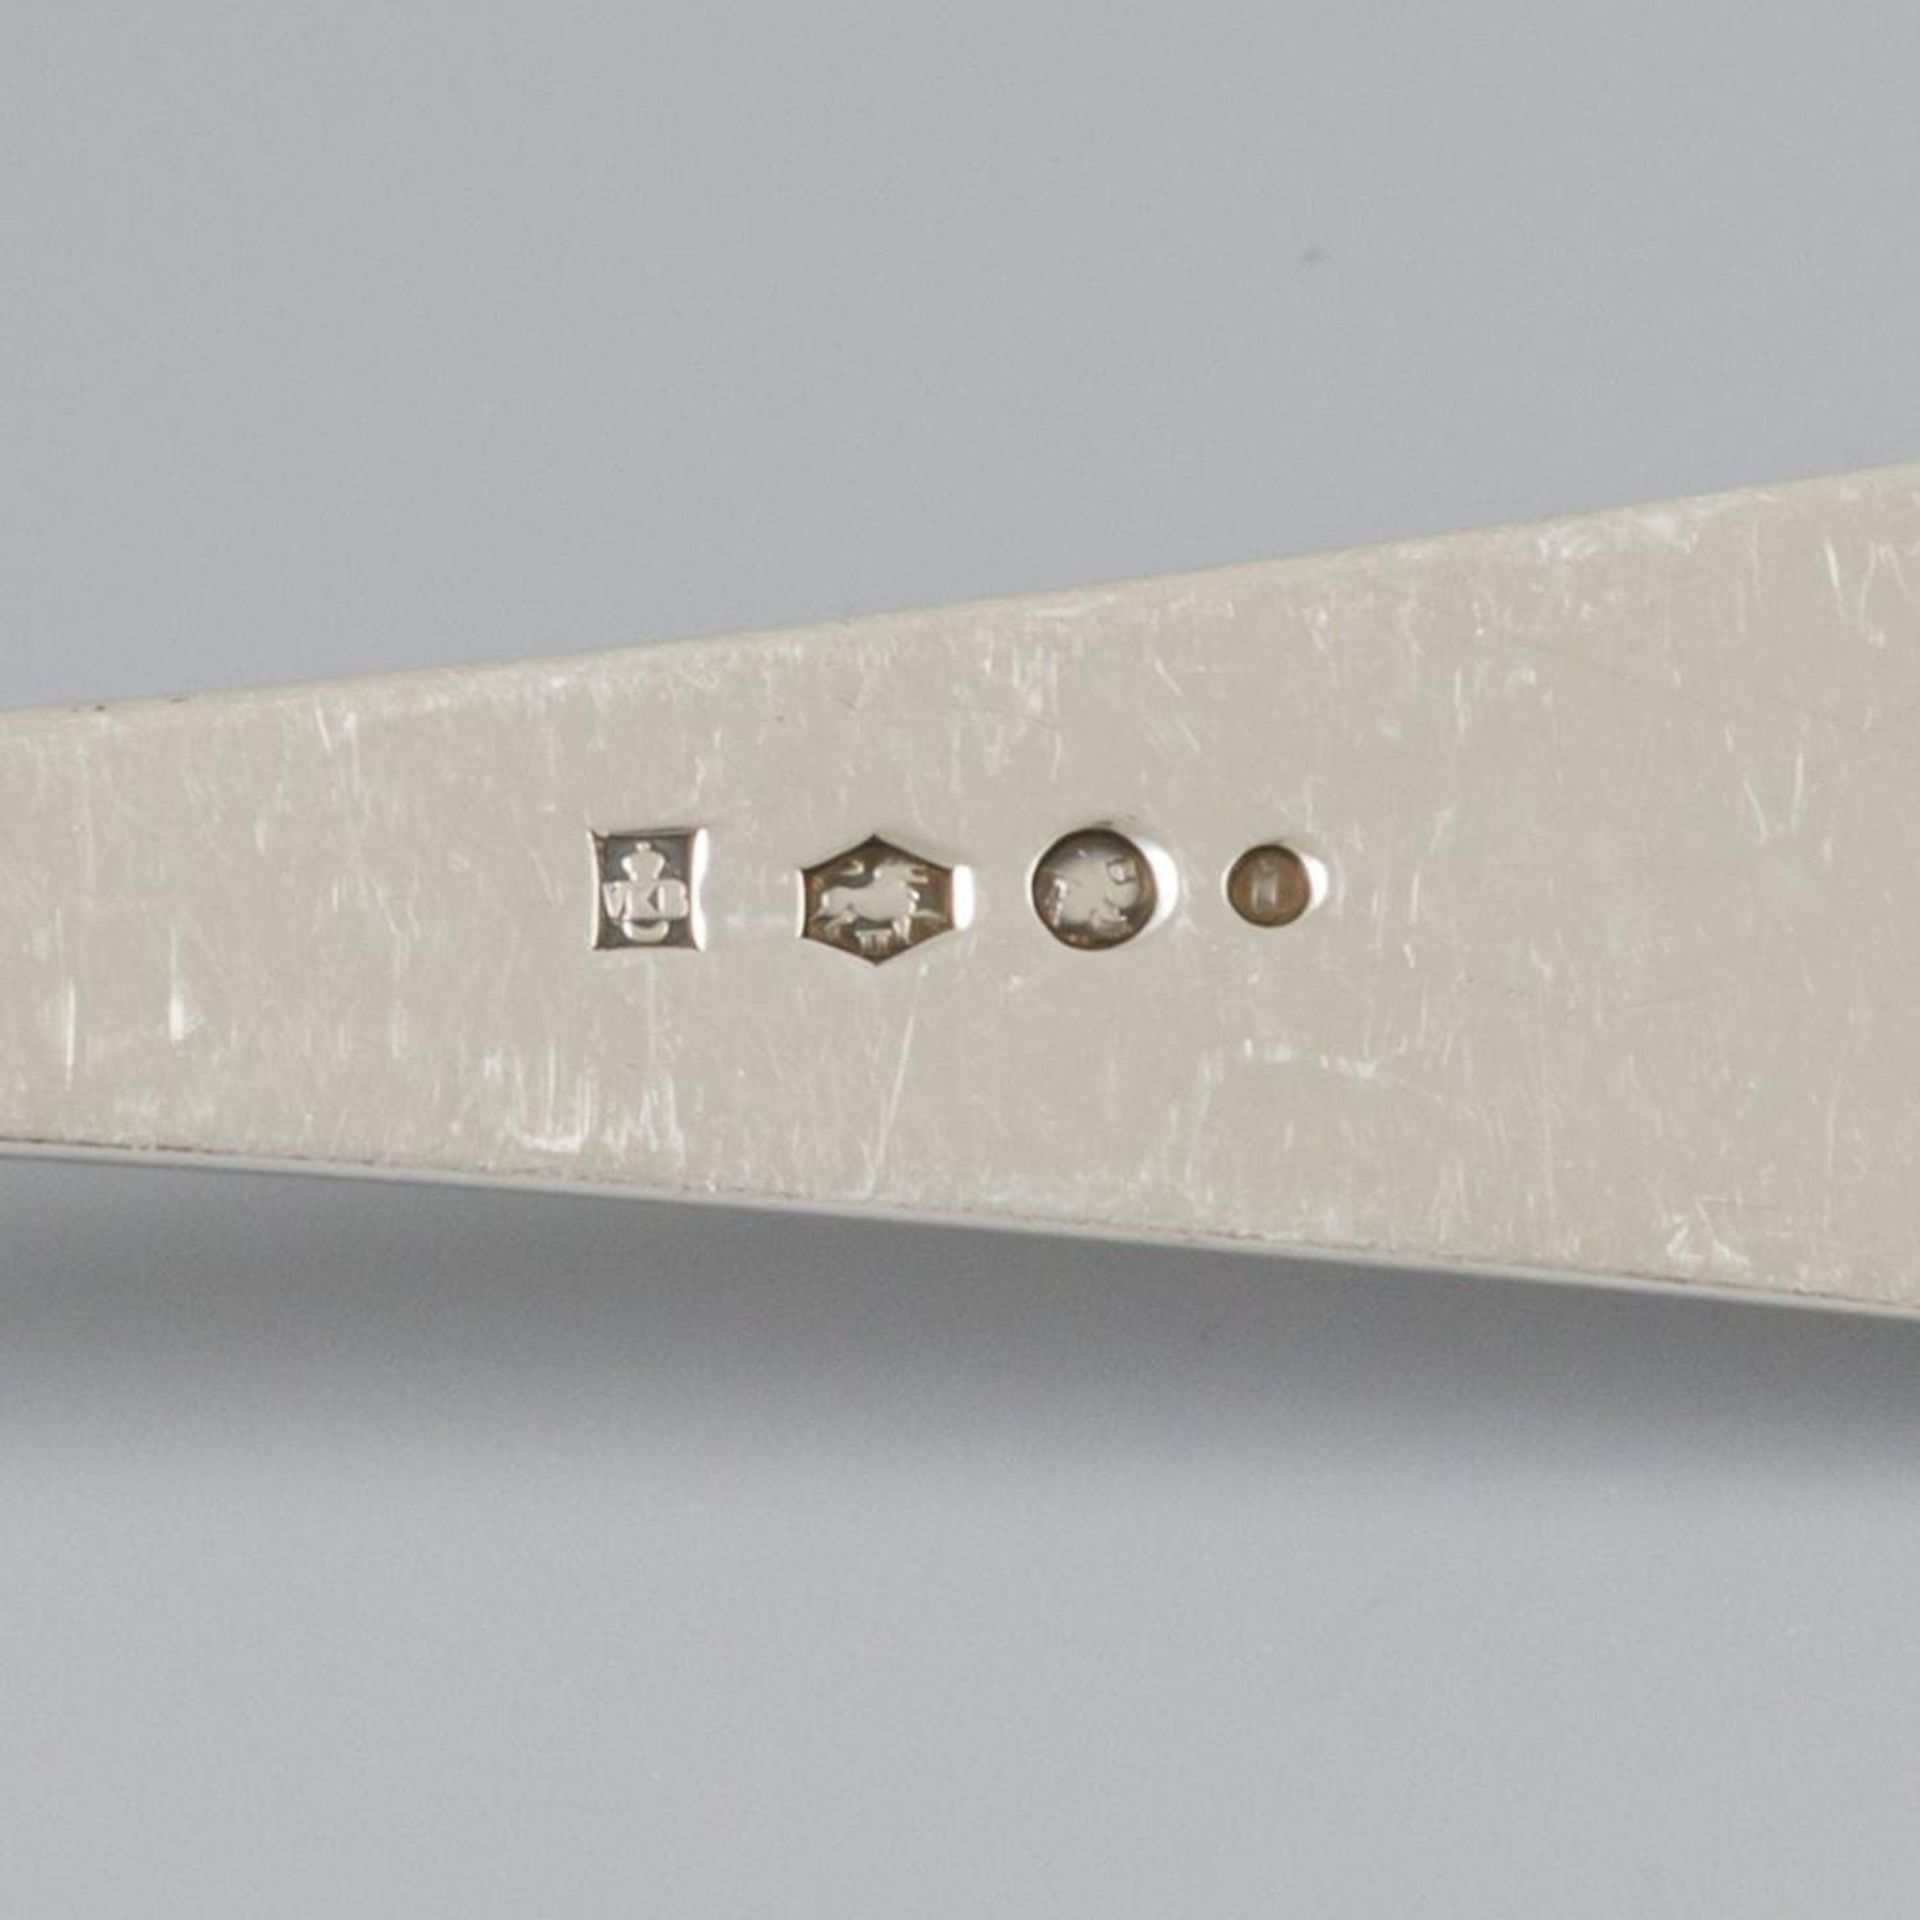 3 piece set of ladles "Haags Lofje" silver. - Bild 5 aus 7